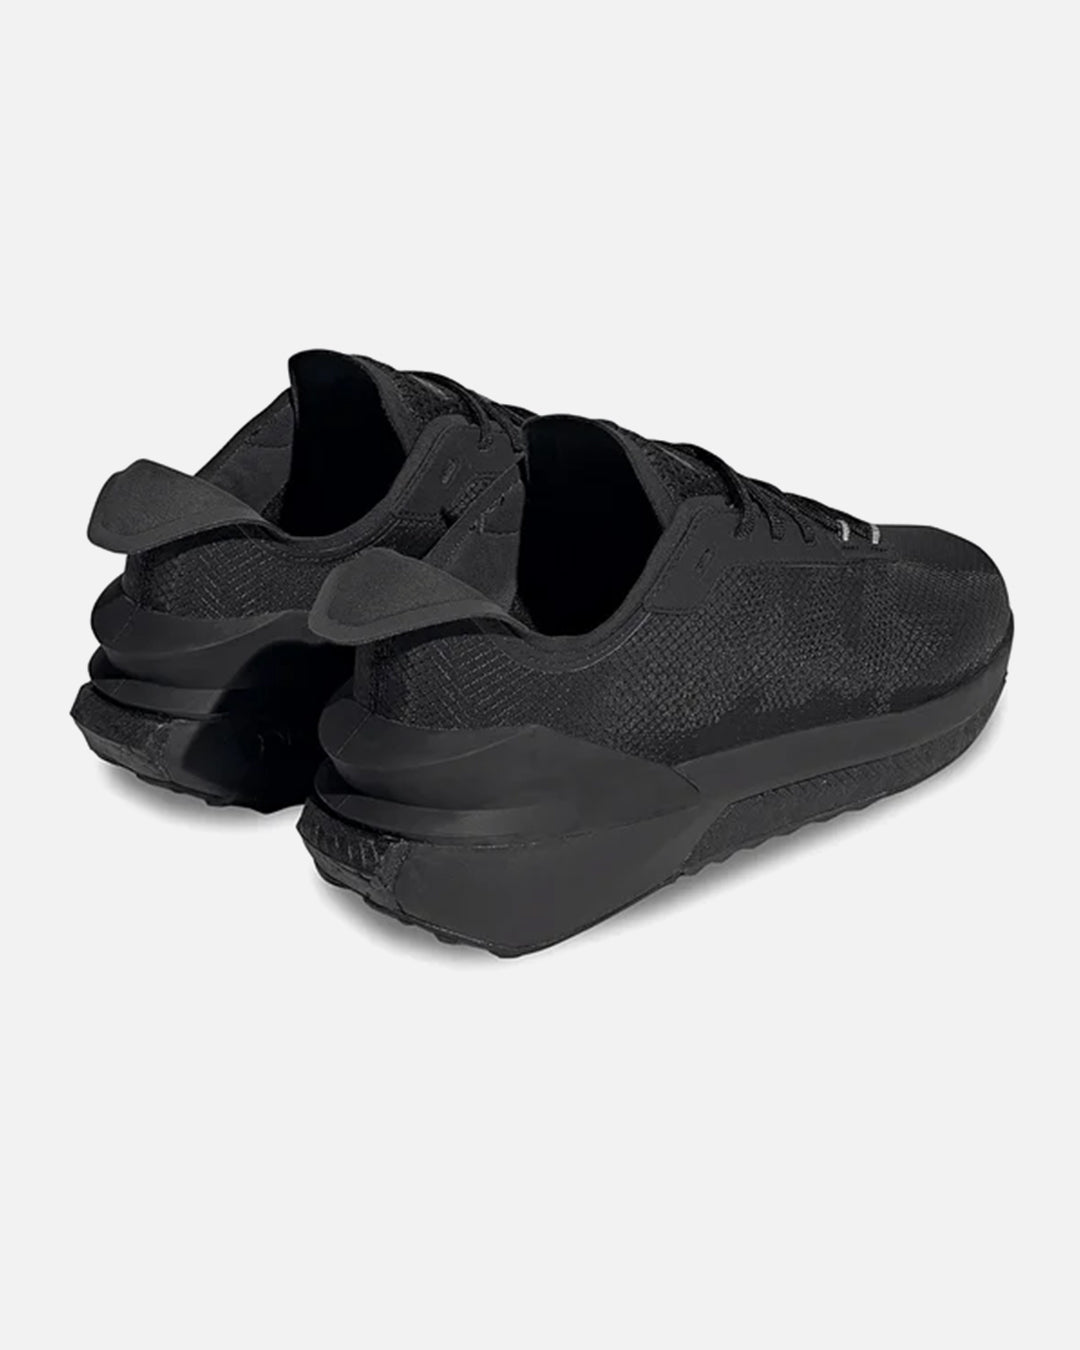 Adidas Avryn - Black